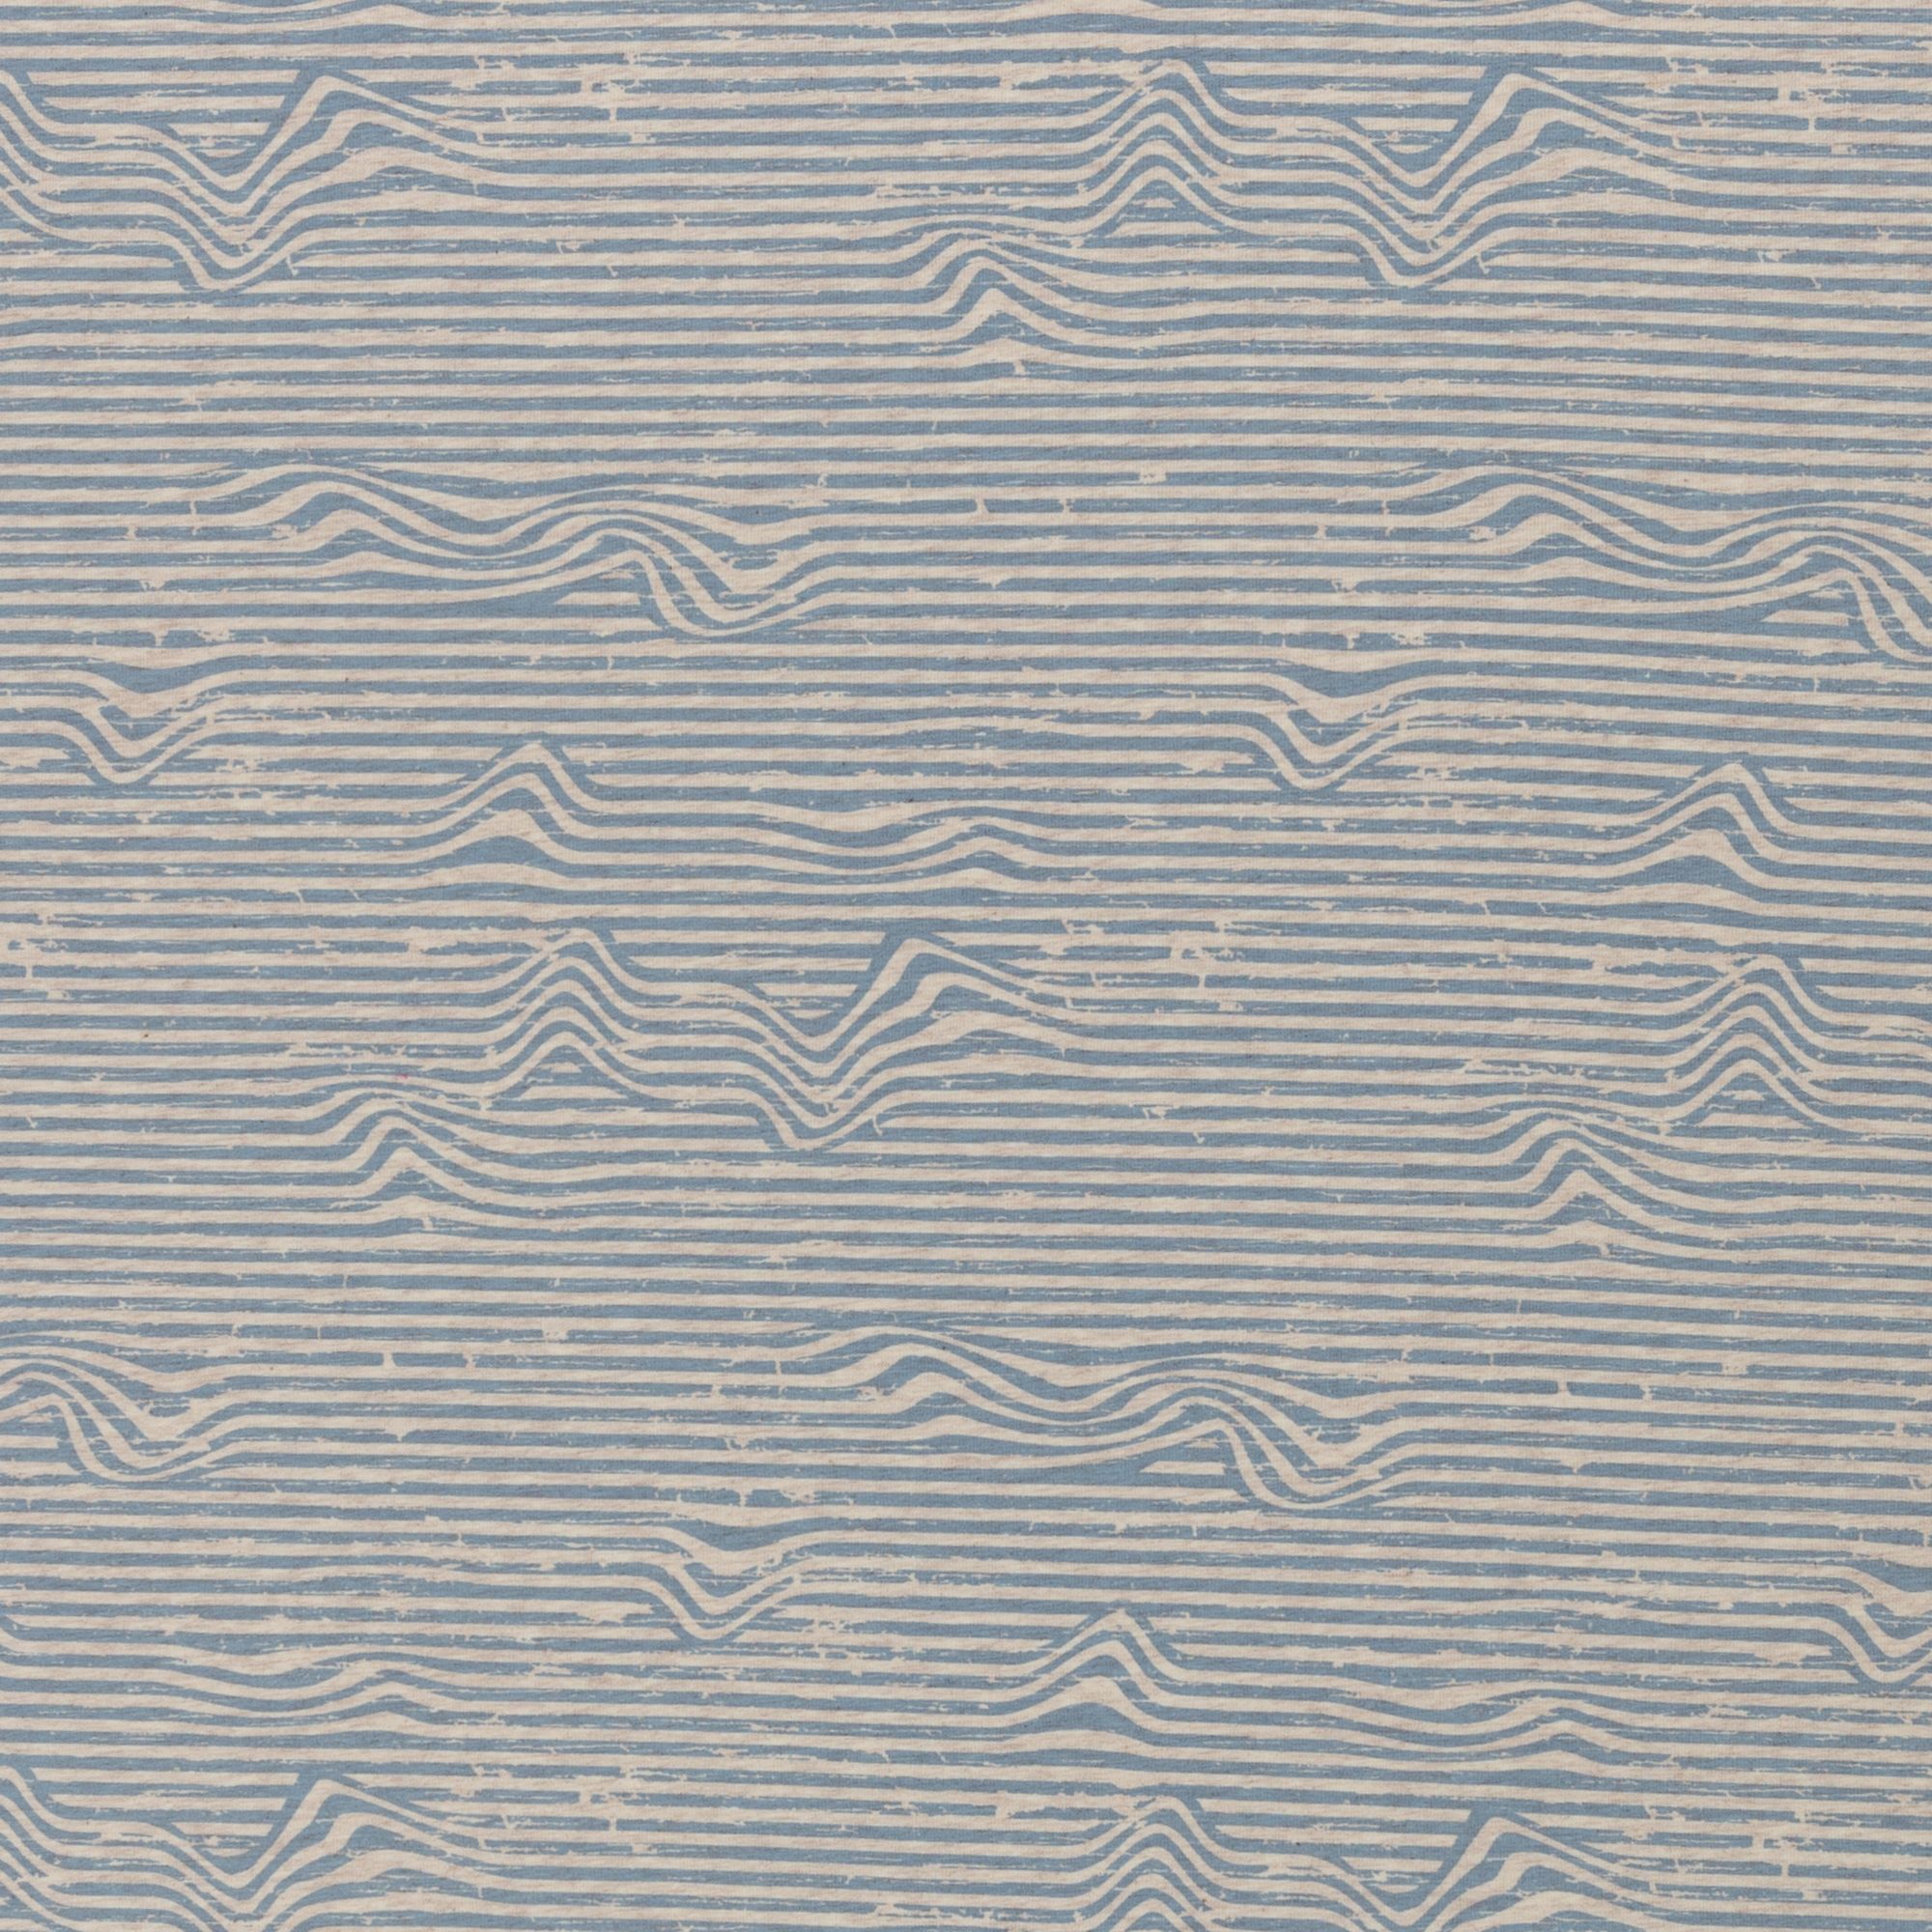 Baumwolljersey - "Benno" - unregelmäßig gewellte Streifen - taubenblau/beige